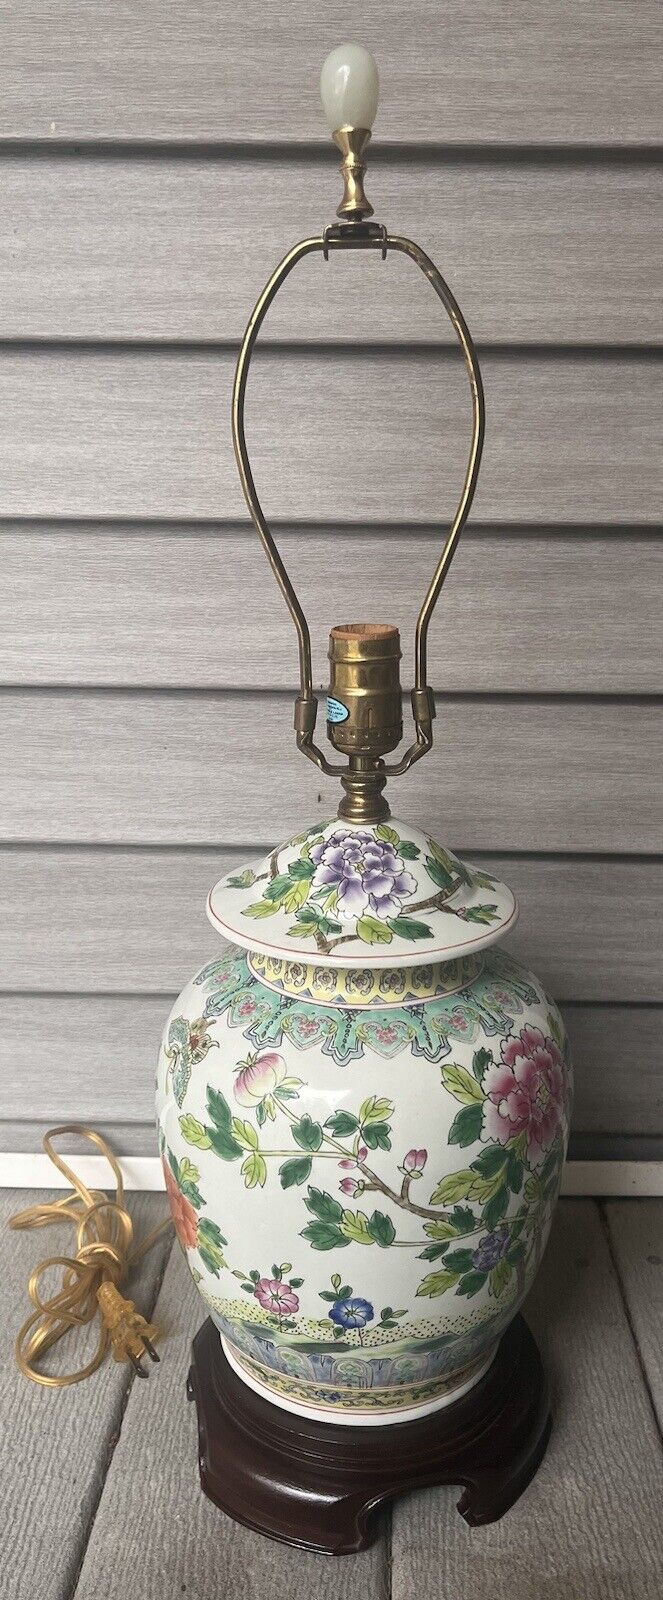 Vintage Asian Floral Green Leaves Ceramic Ginger Jar Table Lamp-RARE FIND